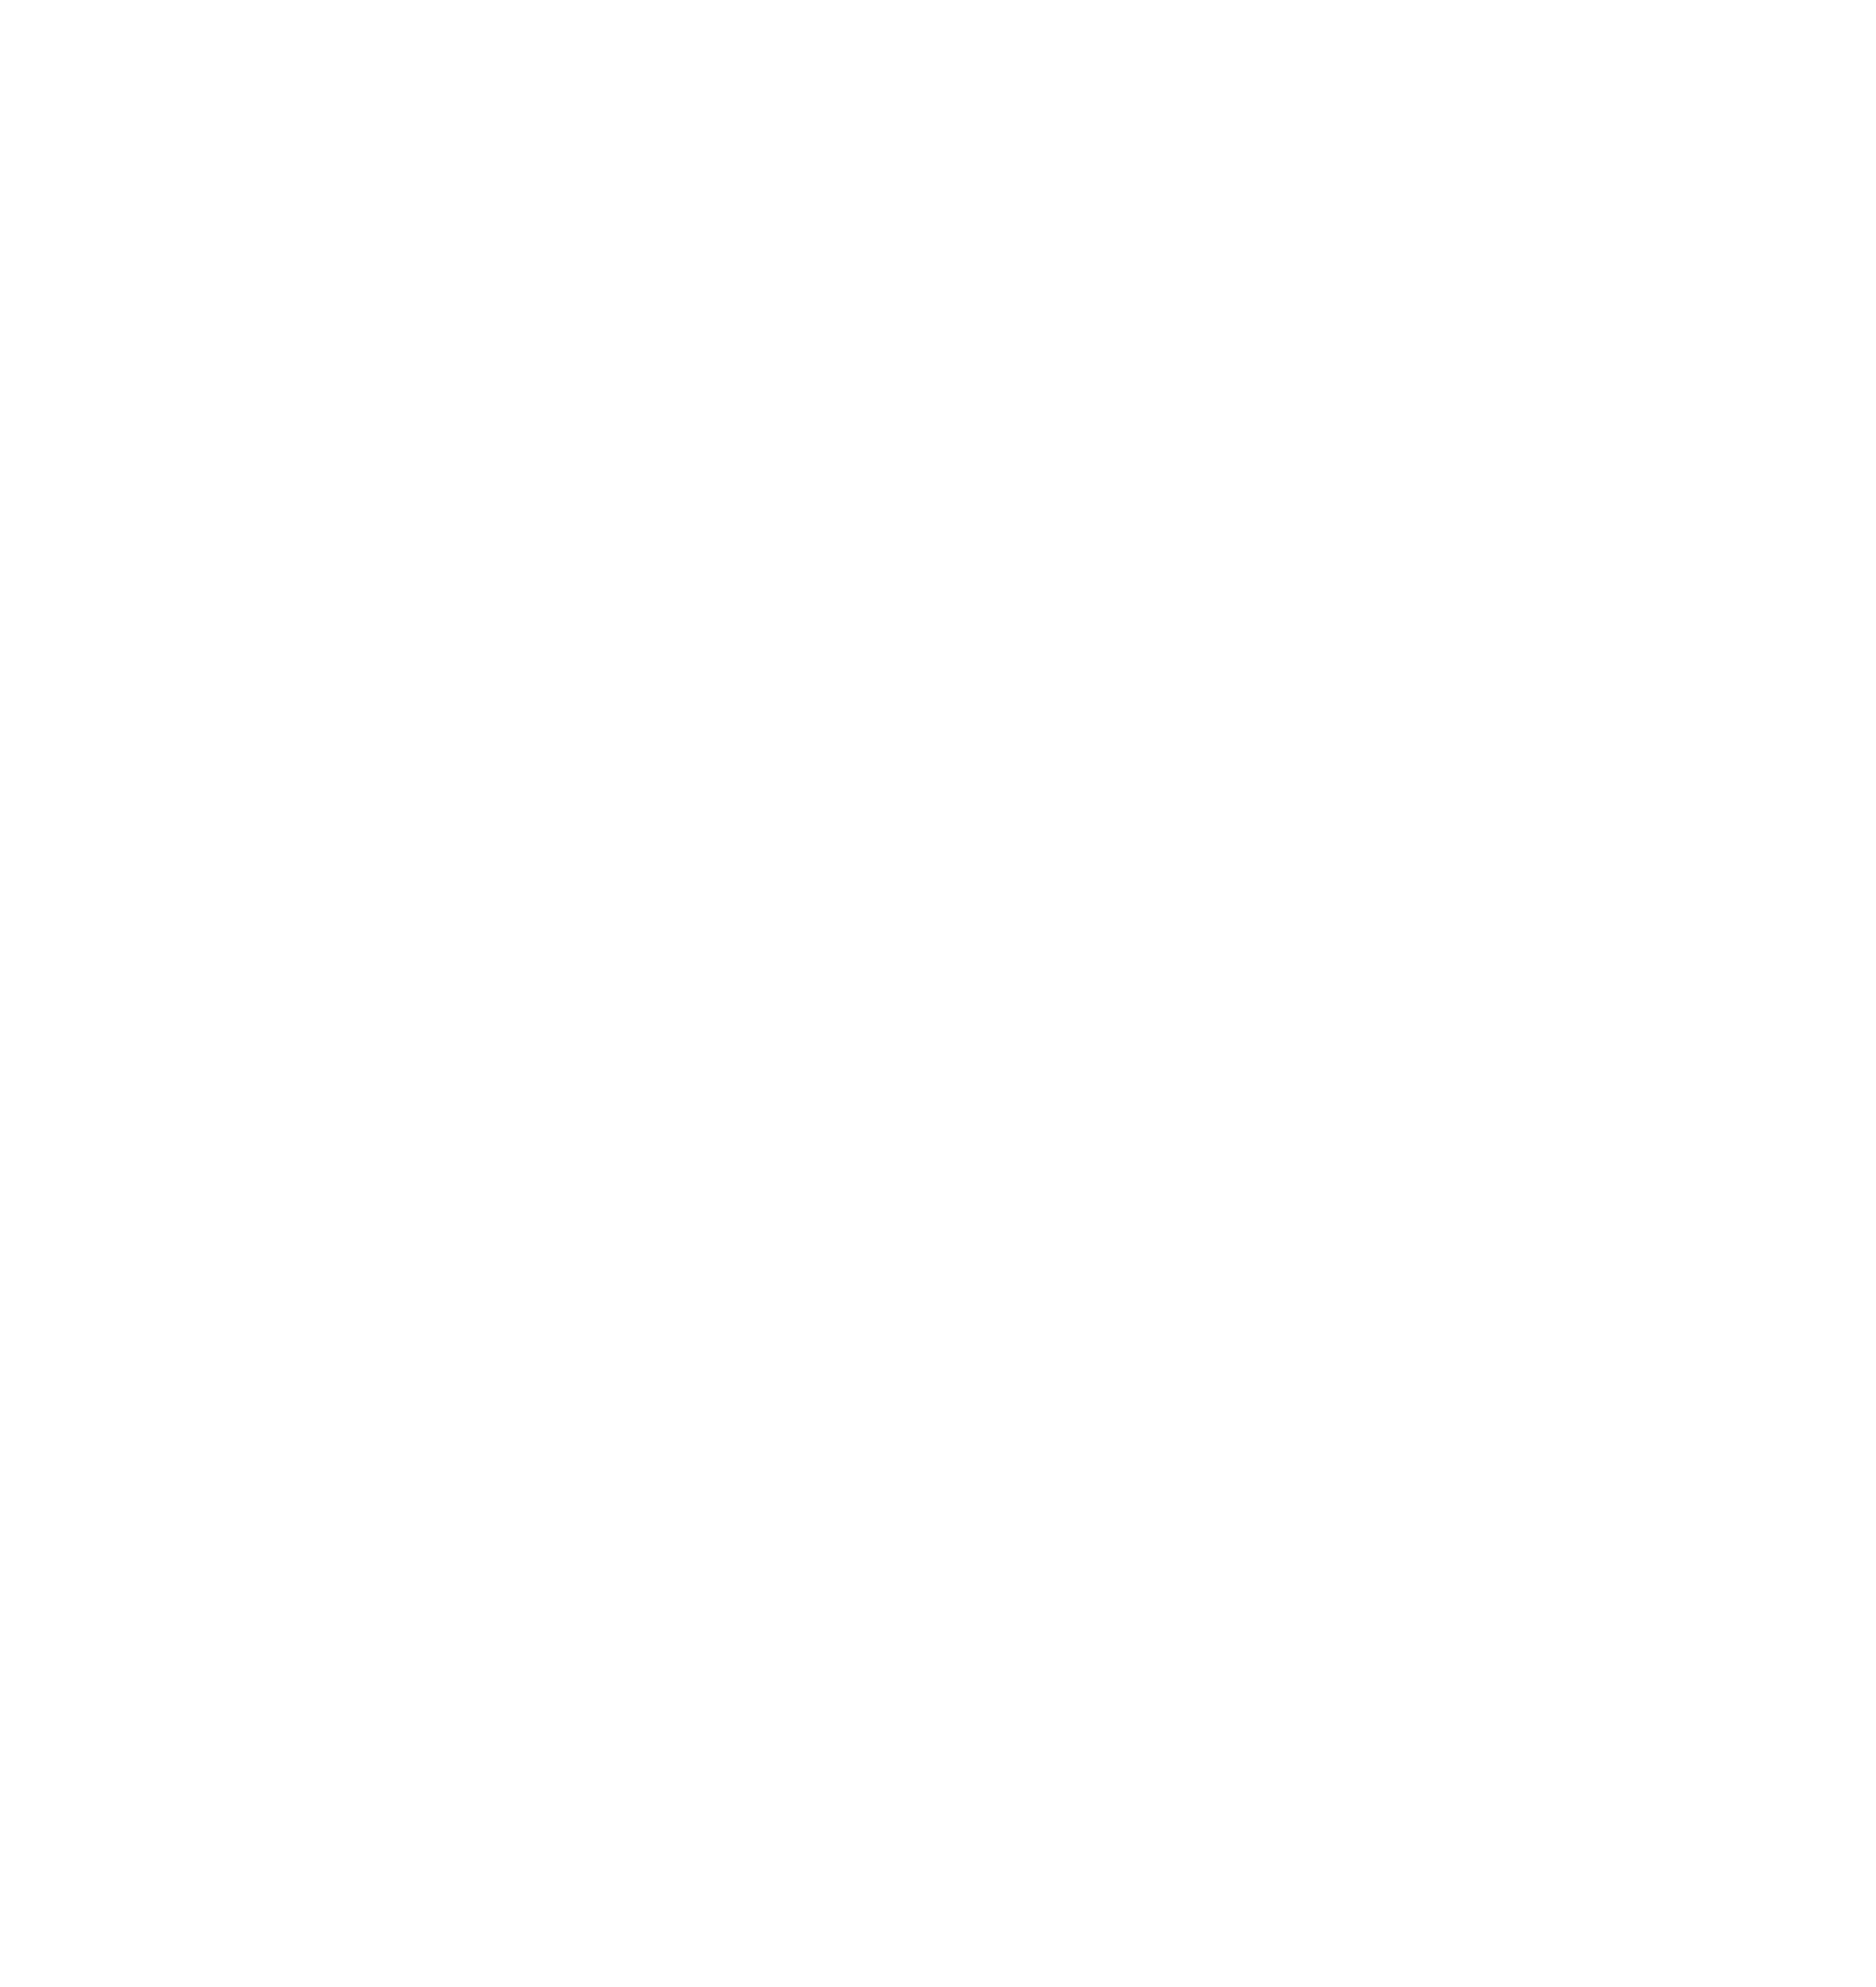 EWGCC logo